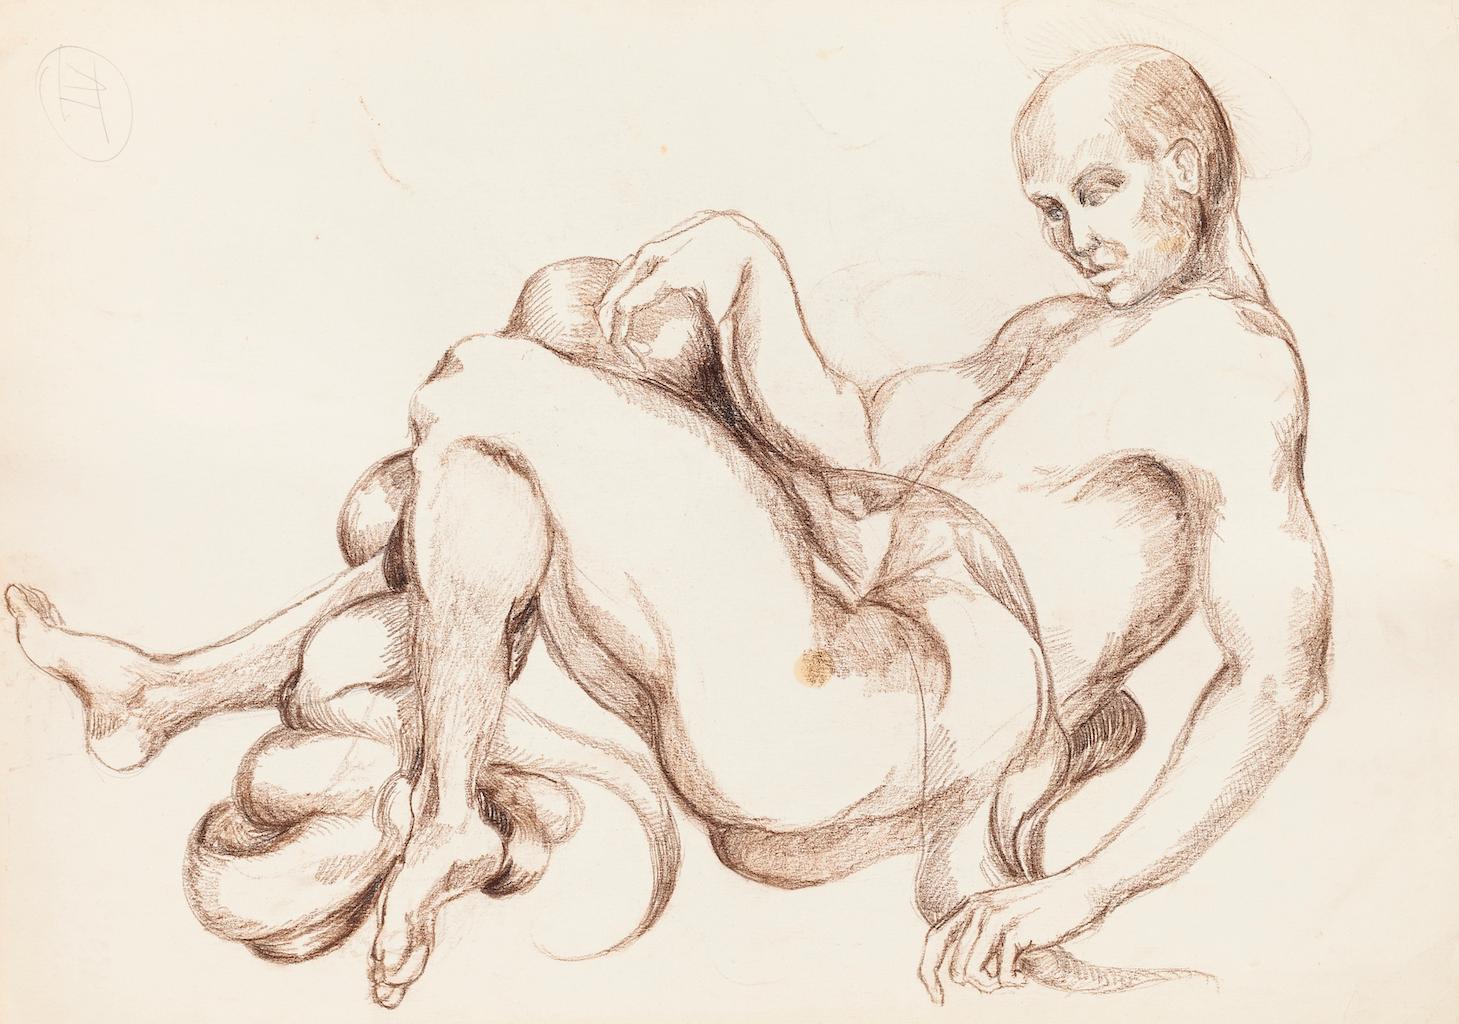 Nude Study ist eine Originalzeichnung in bräunlicher Kohle auf Elfenbeinpapier, die Debora Sinibaldi 1985 anfertigte.

In gutem Zustand mit einigen Faltungen an den Rändern.

Das Kunstwerk stellt die Akt-Anatomie-Studie durch weiche und präzise